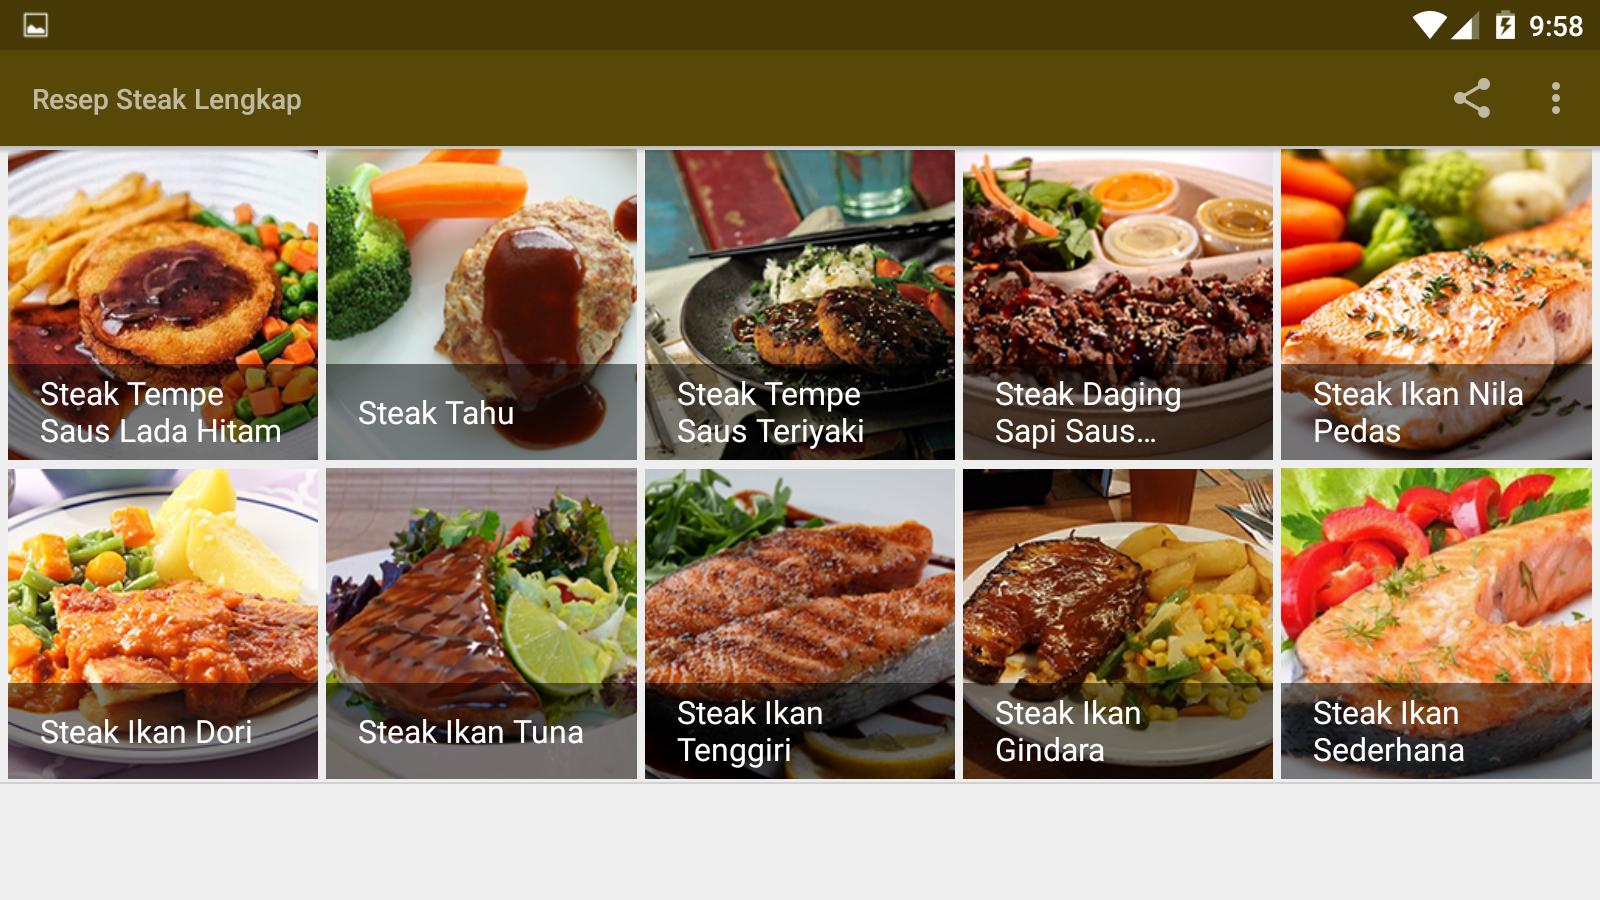 Resep Steak Lengkap For Android Apk Download